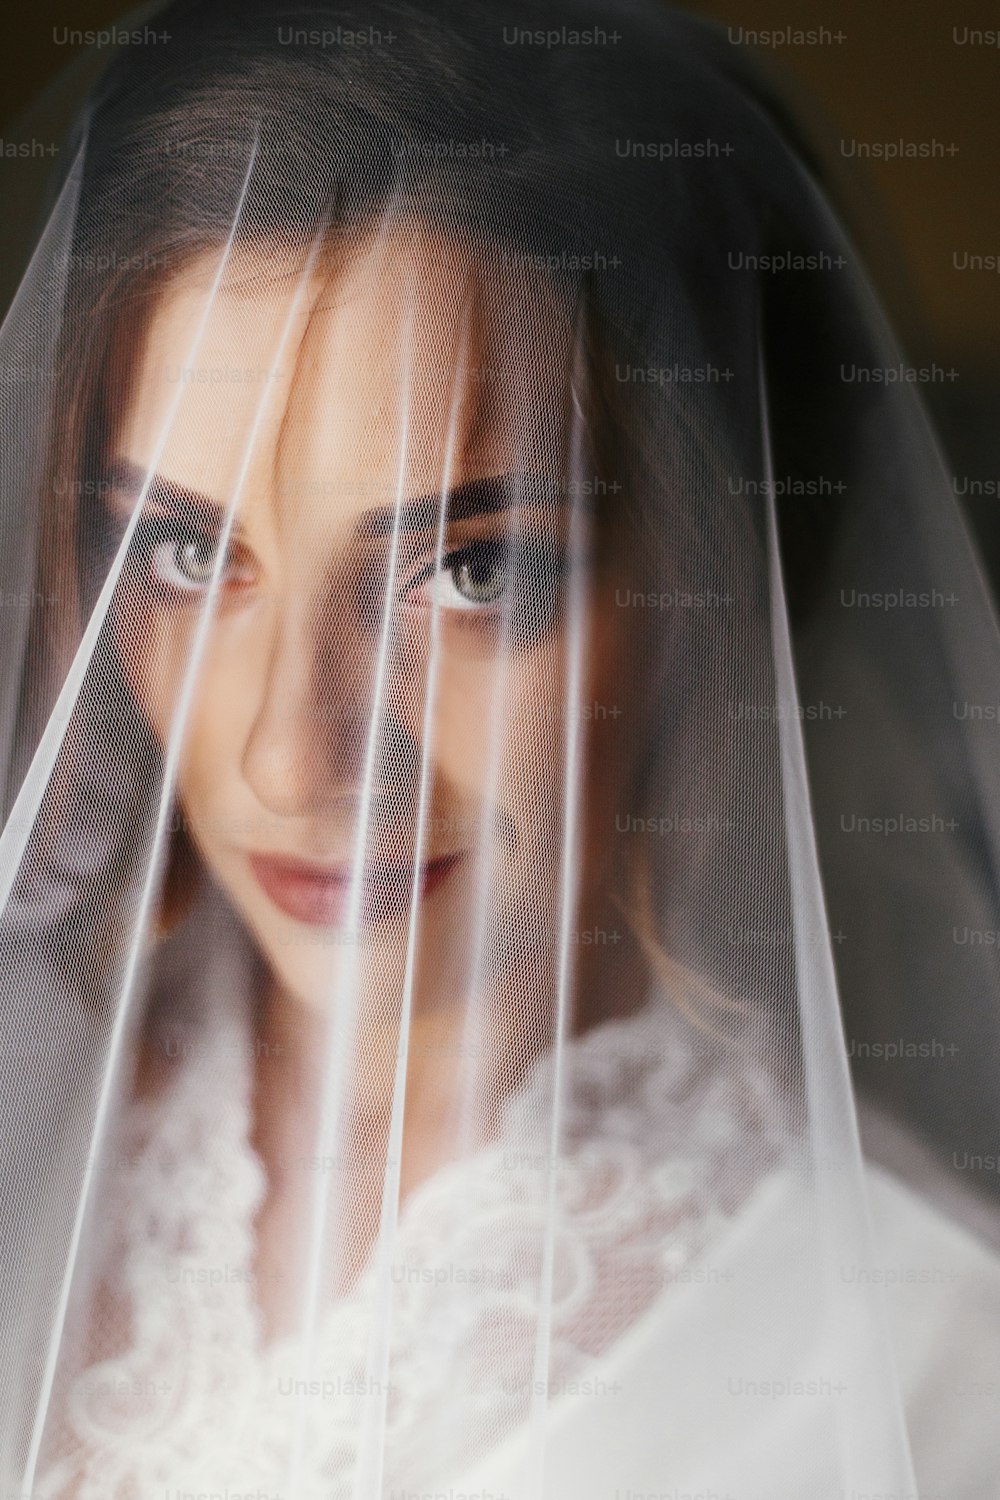 Wunderschöne schöne Braut in Seidengewand unter Schleier, die im weichen Licht am Fenster posiert. Glückliche stilvolle Braut mit perfektem Make-up lächelnd. Brautvormittag